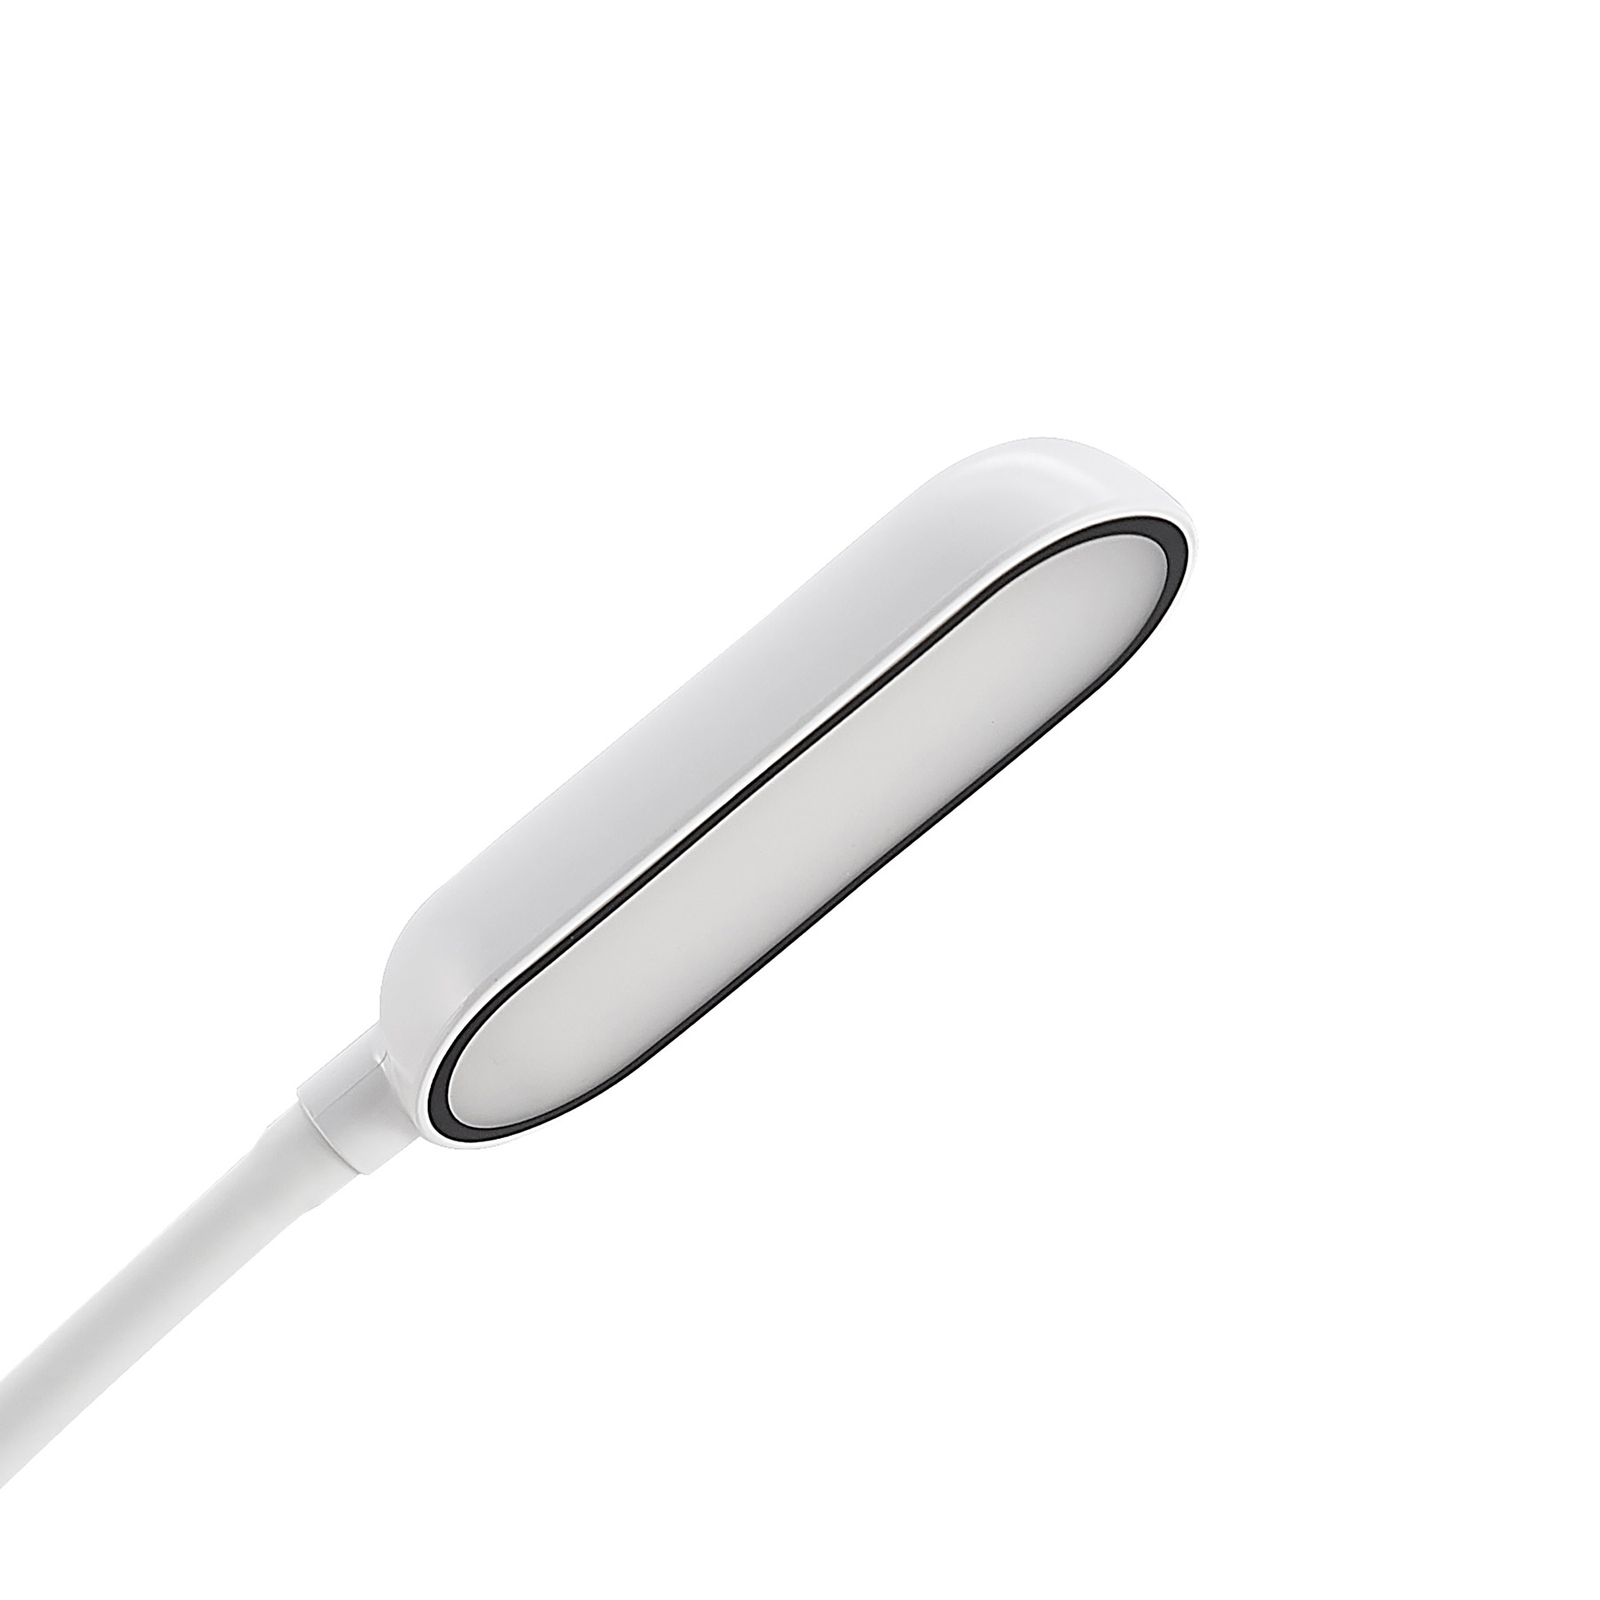 Prios LED stezna lampa Najari, bijela, baterija, USB, 51 cm visoka